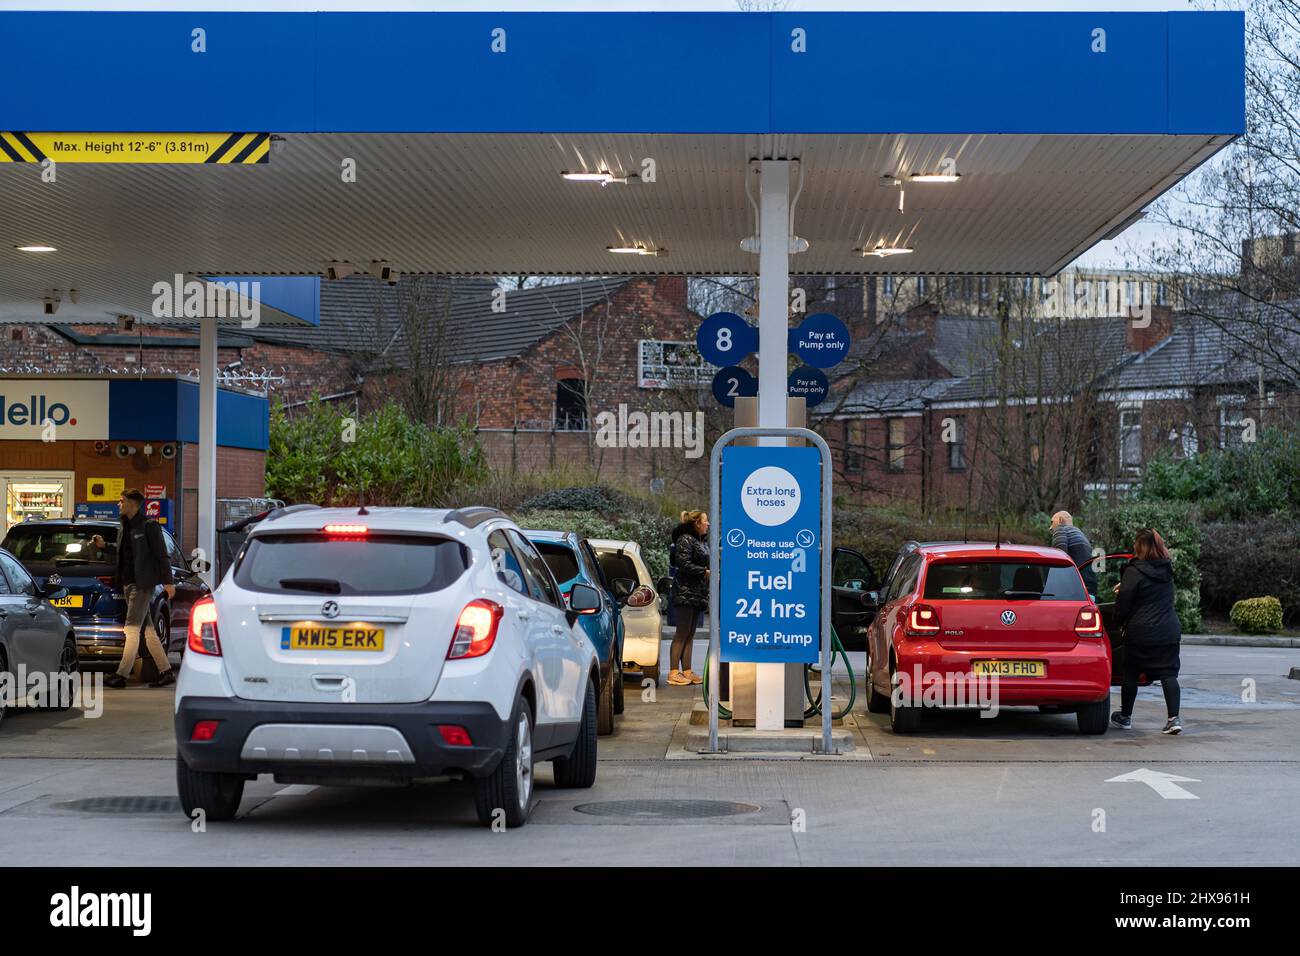 Wigan, Reino Unido: 10 de marzo de 2022: Poner en cola los coches esperando para comprar combustible en una estación de llenado de gasolina Tesco, ya que los conductores británicos pánico comprar combustible Foto de stock